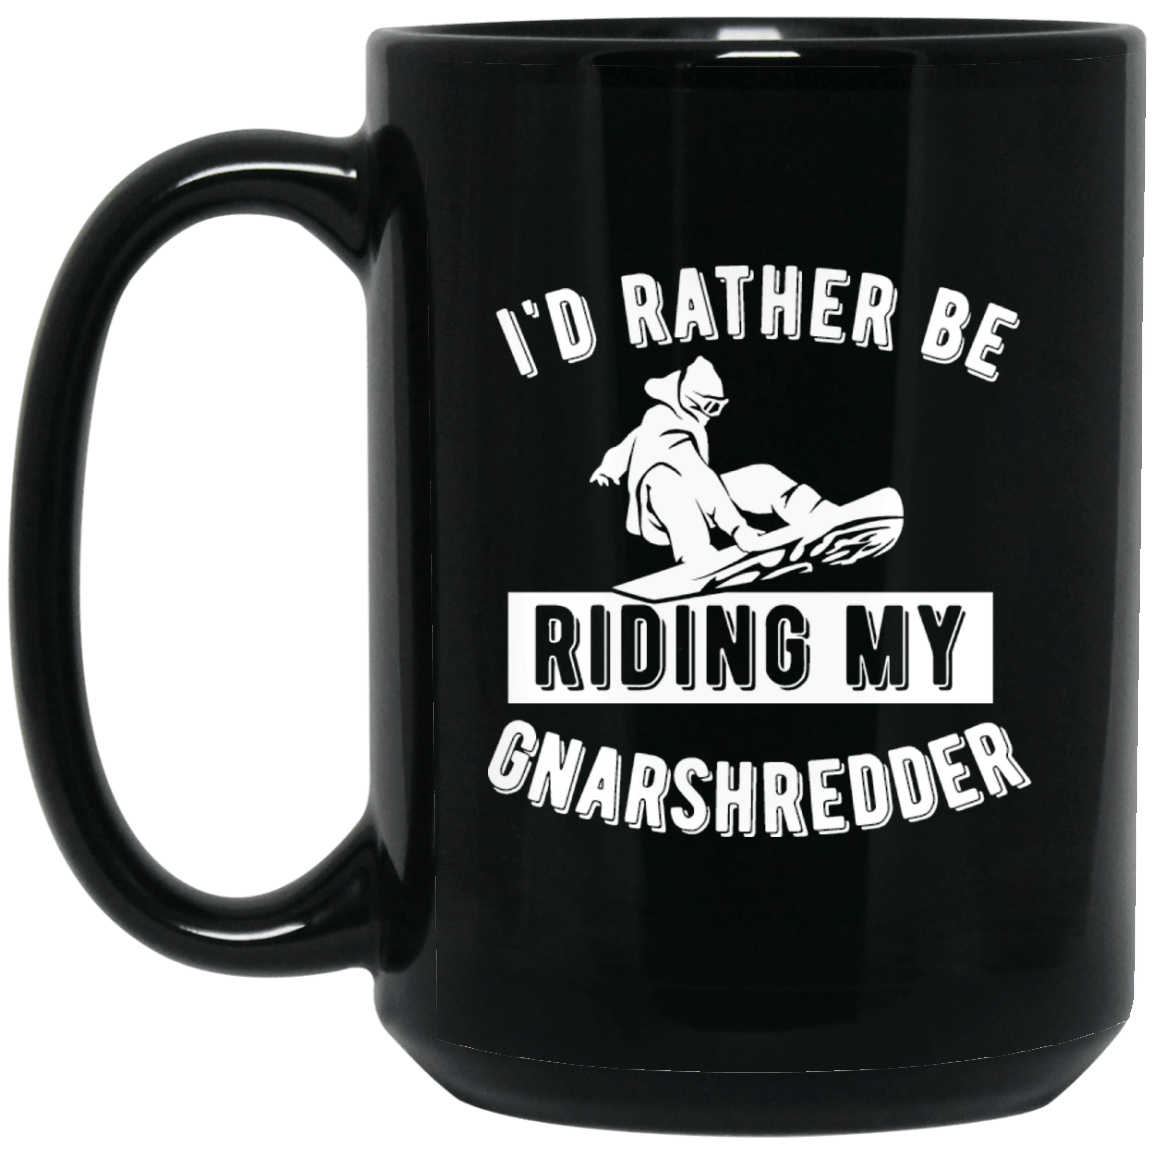 I'd Rather Be Riding My Gnarshredder Black Mug - Powderaddicts